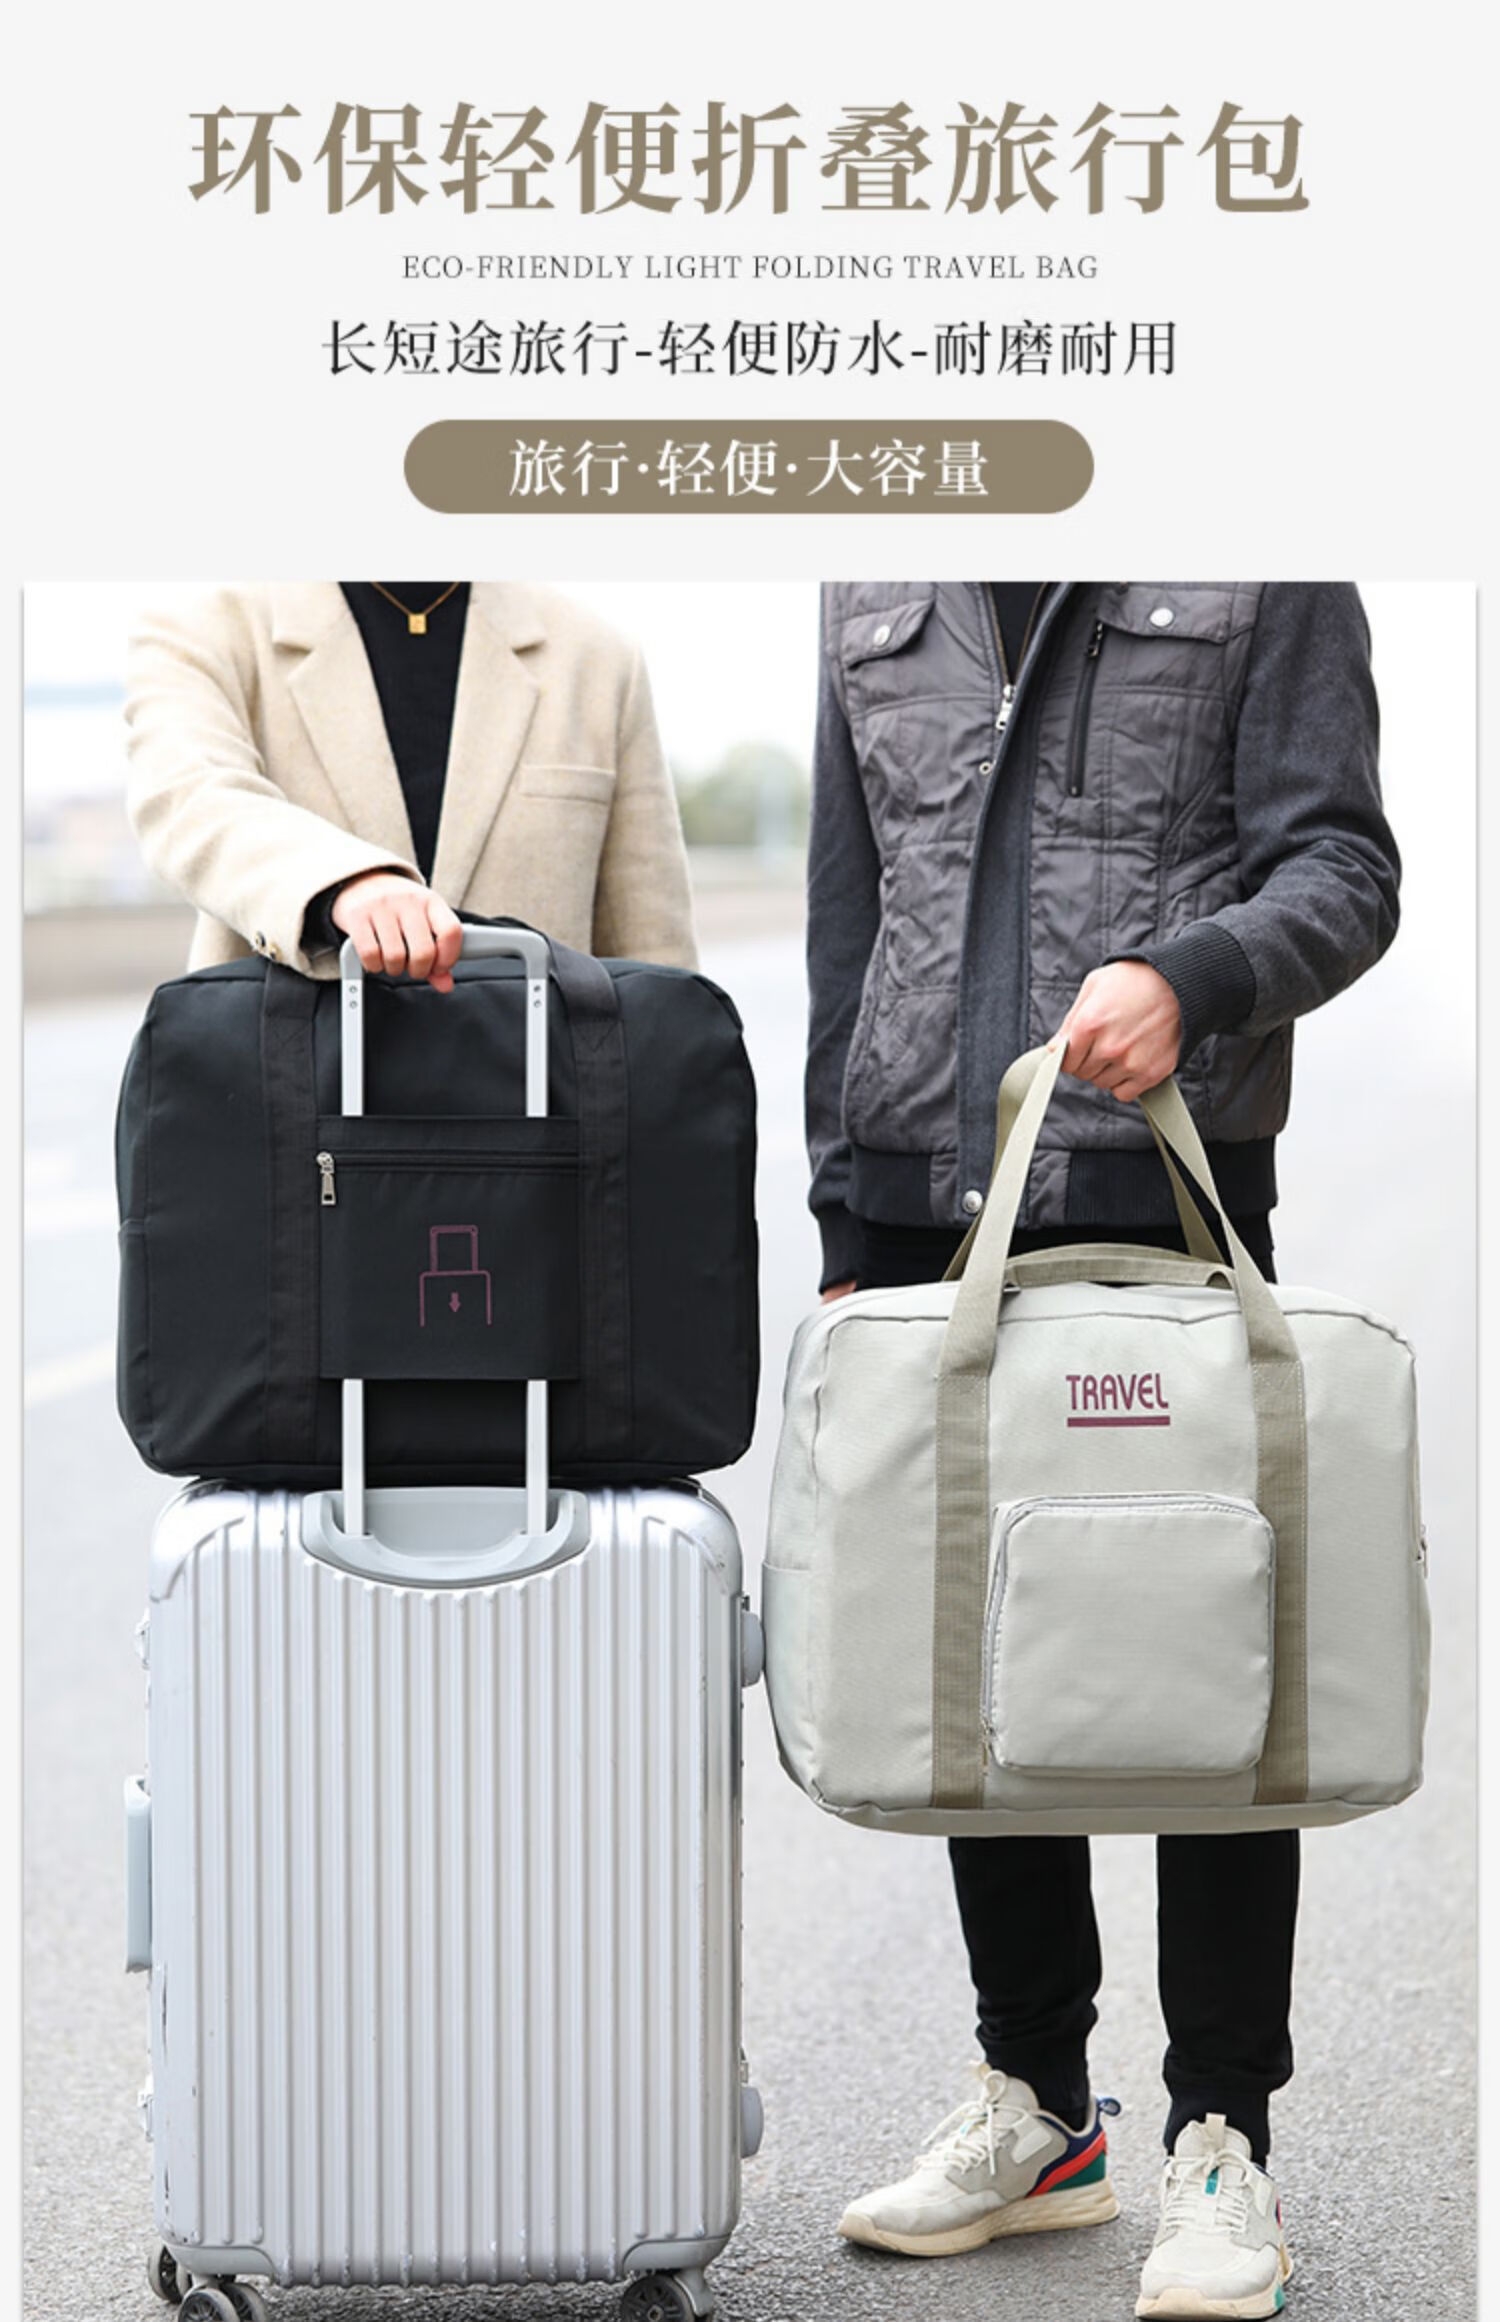 行李箱挂包行李箱上的收纳包拉杆箱上放的旅行包可折叠旅行袋便携行李